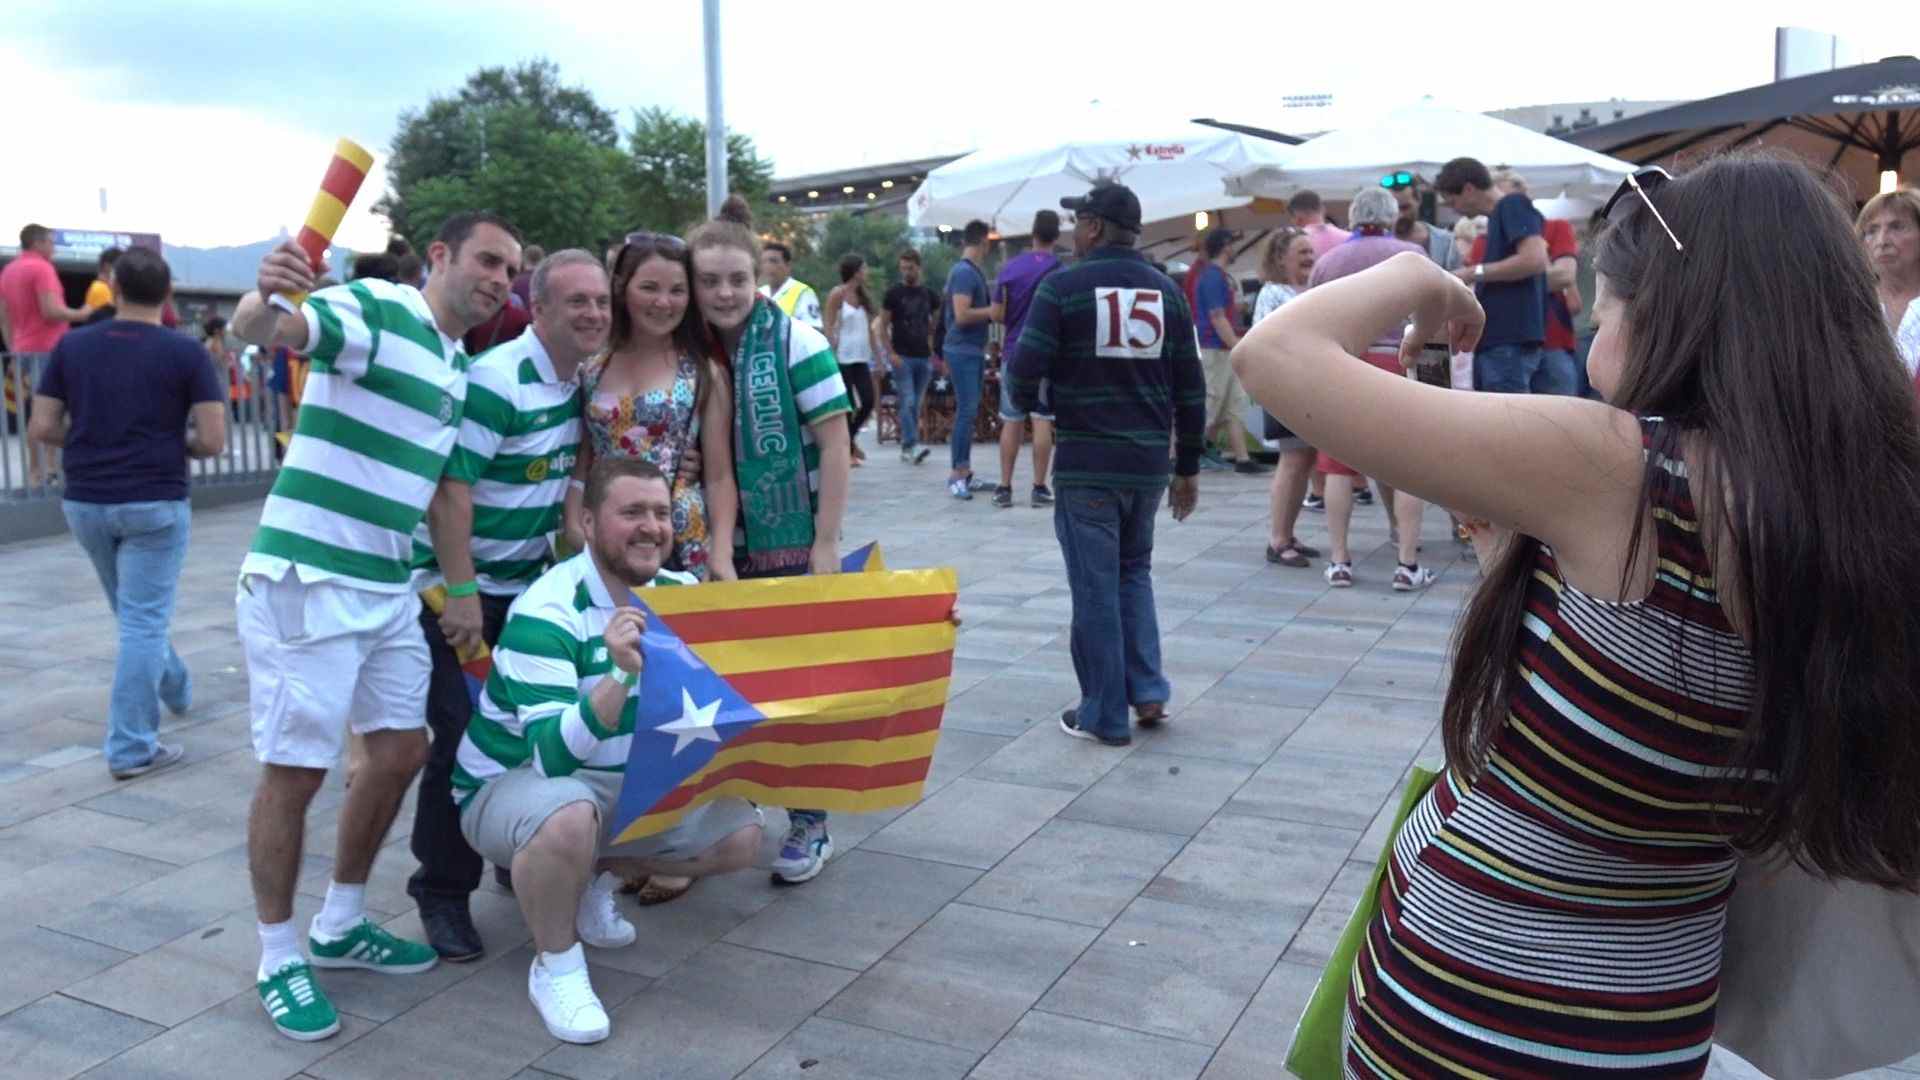 Vídeo: "M'agradaria que els catalans fossin lliures"